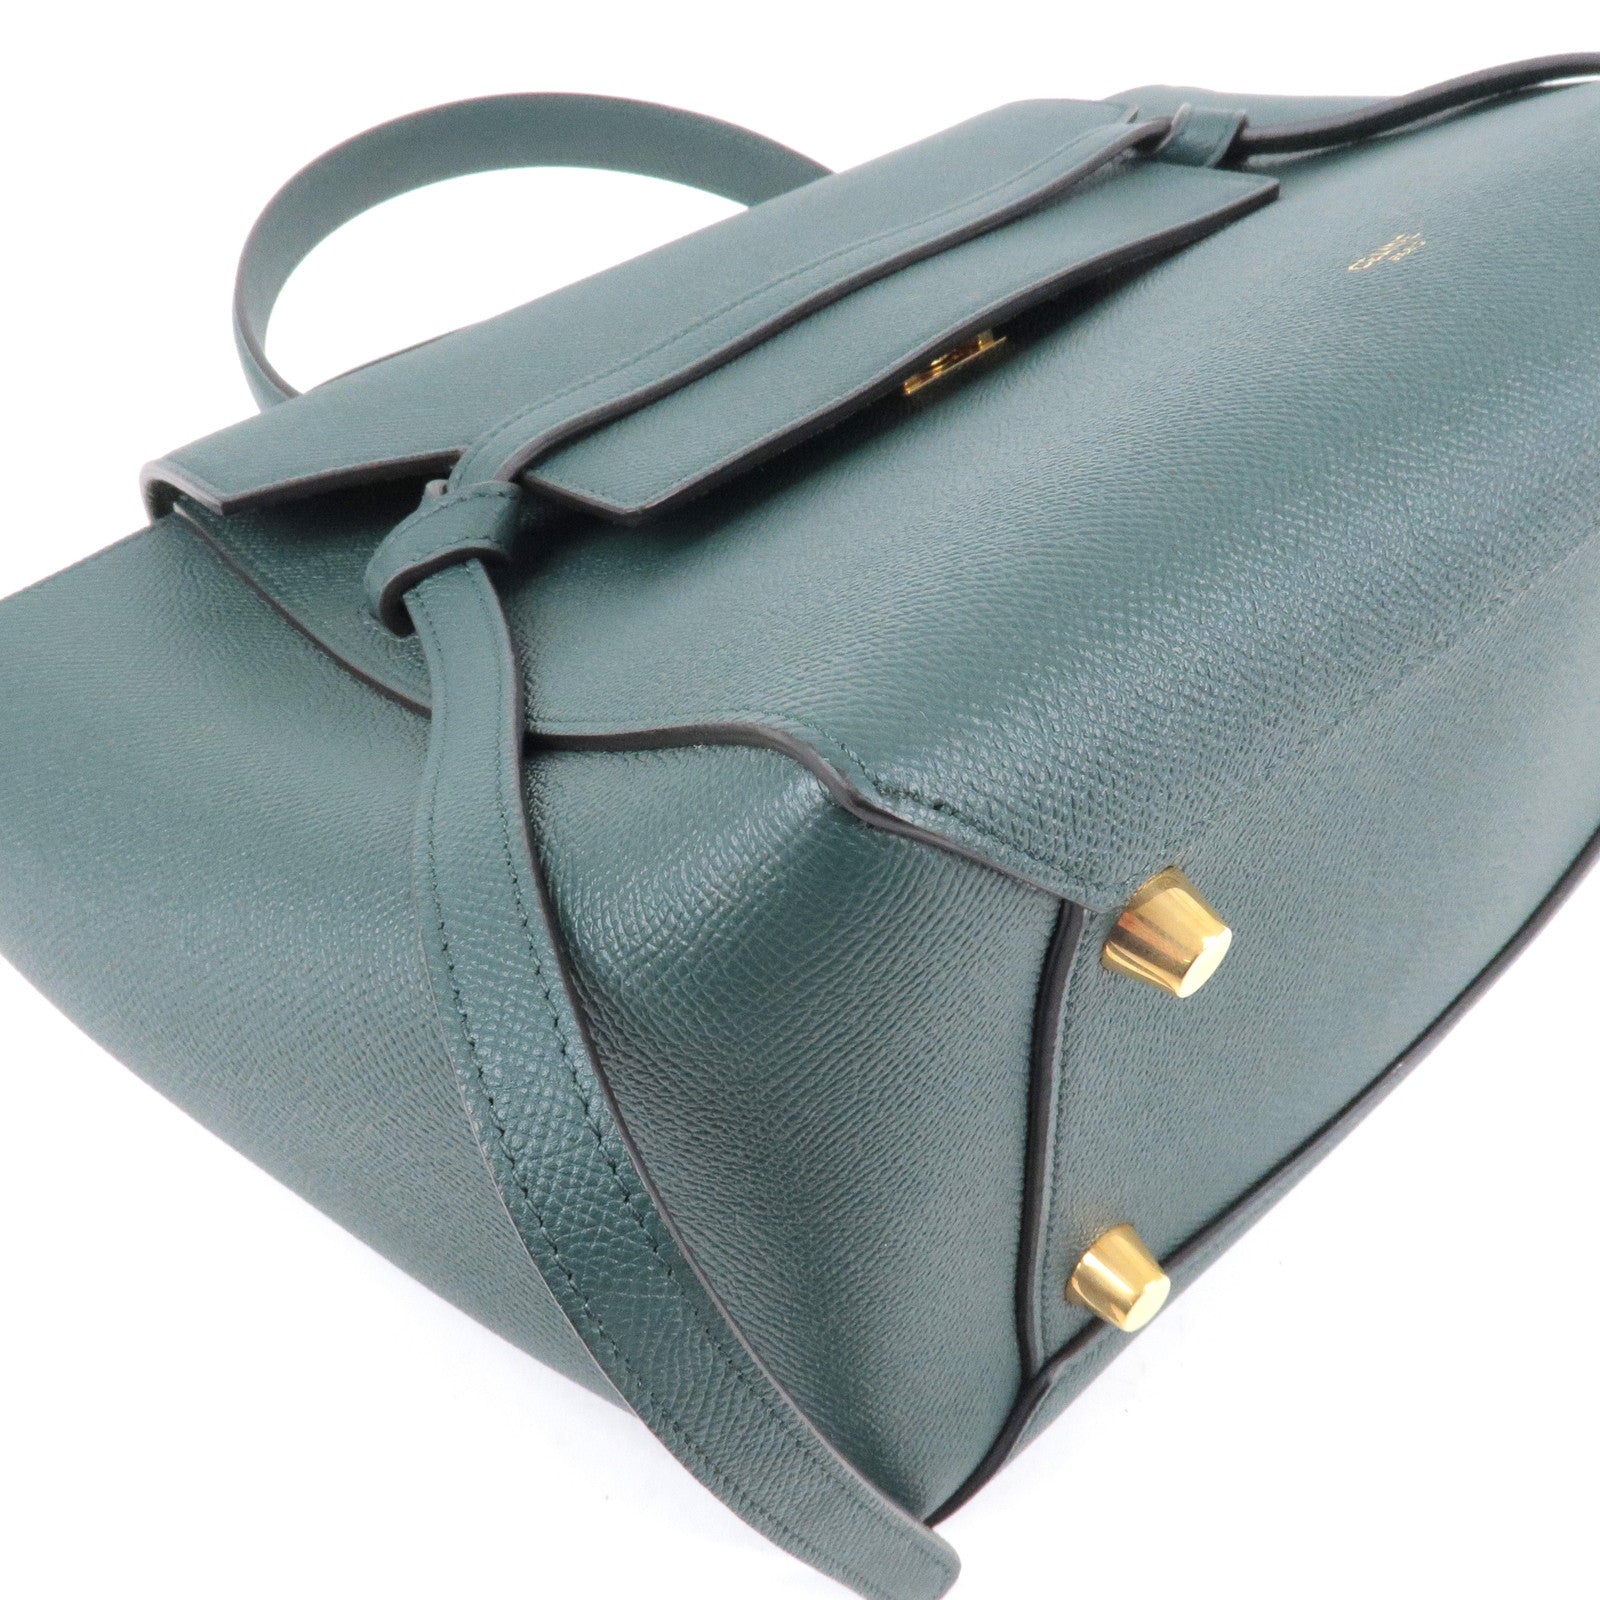 Leather - Green - Bag - Bag - Shoulder - Mini - Bag - Belt